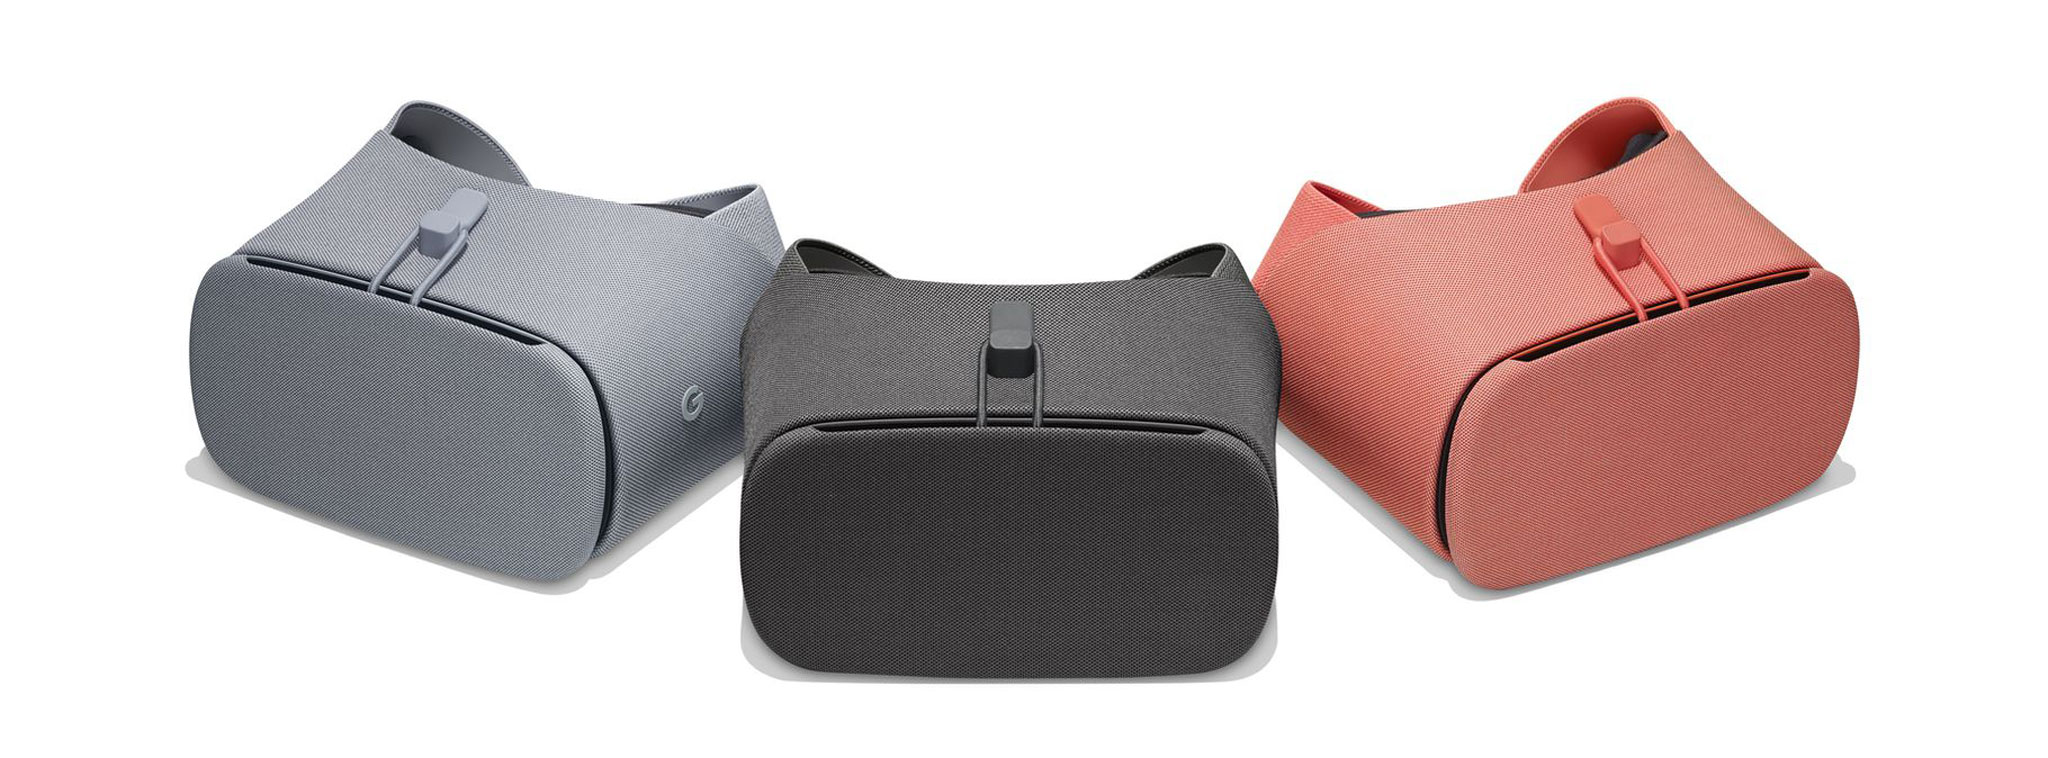 Google ra mắt thiết bị thực tế ảo Daydream View VR, trường nhìn rộng hơn, màu mới, giá 99 đô